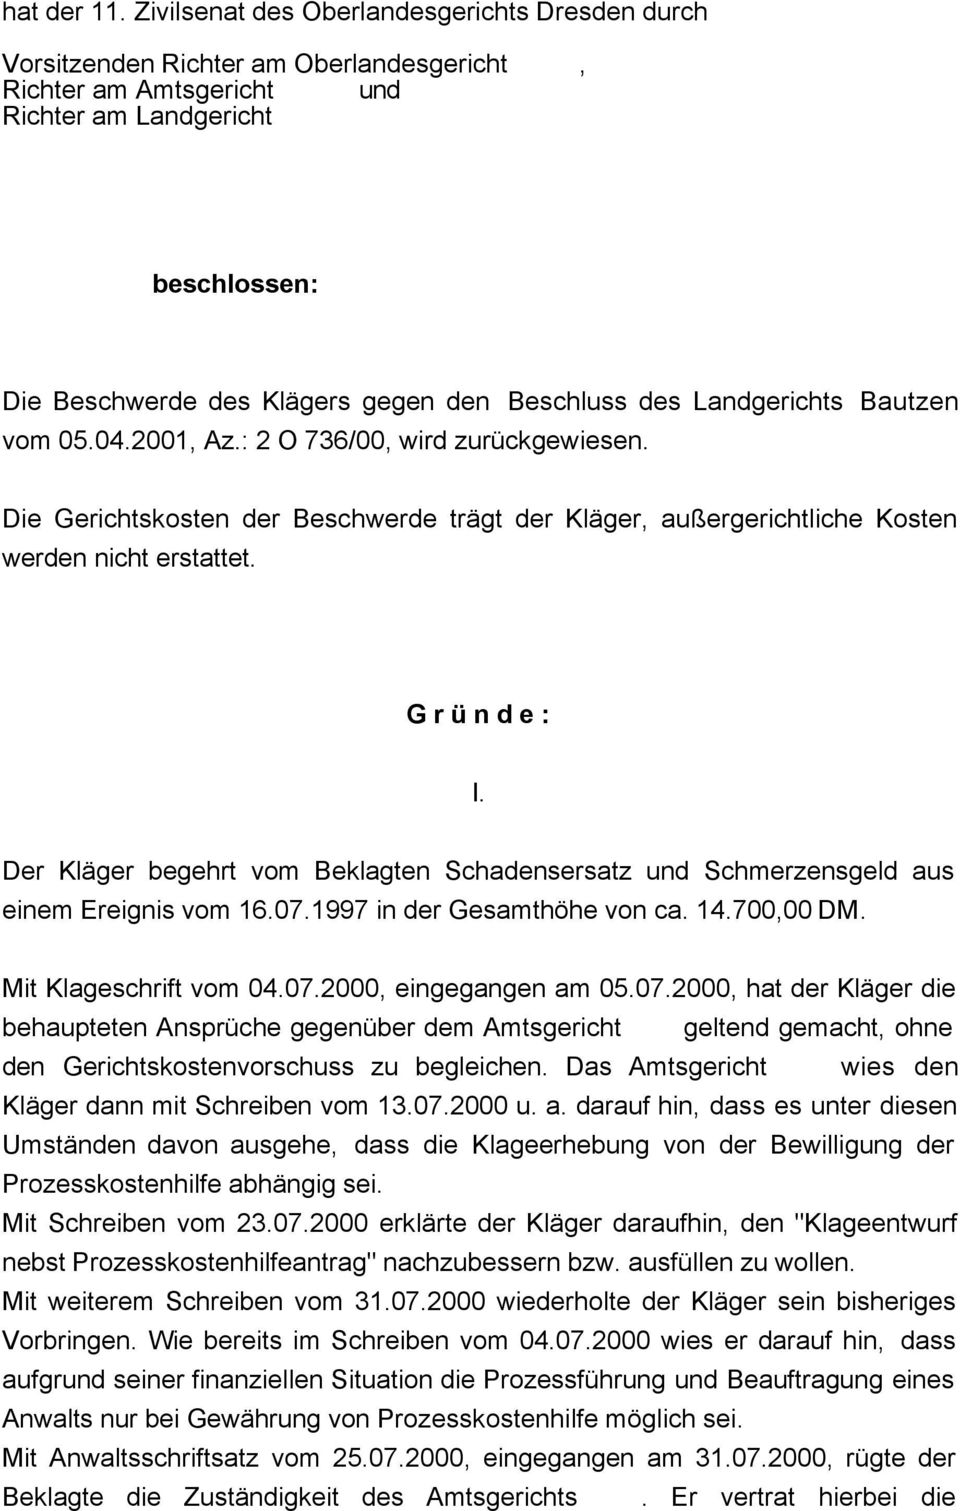 des Landgerichts Bautzen vom 05.04.2001 Az.: 2 O 736/00 wird zurückgewiesen. Die Gerichtskosten der Beschwerde trägt der Kläger außergerichtliche Kosten werden nicht erstattet. G r ü n d e : I.